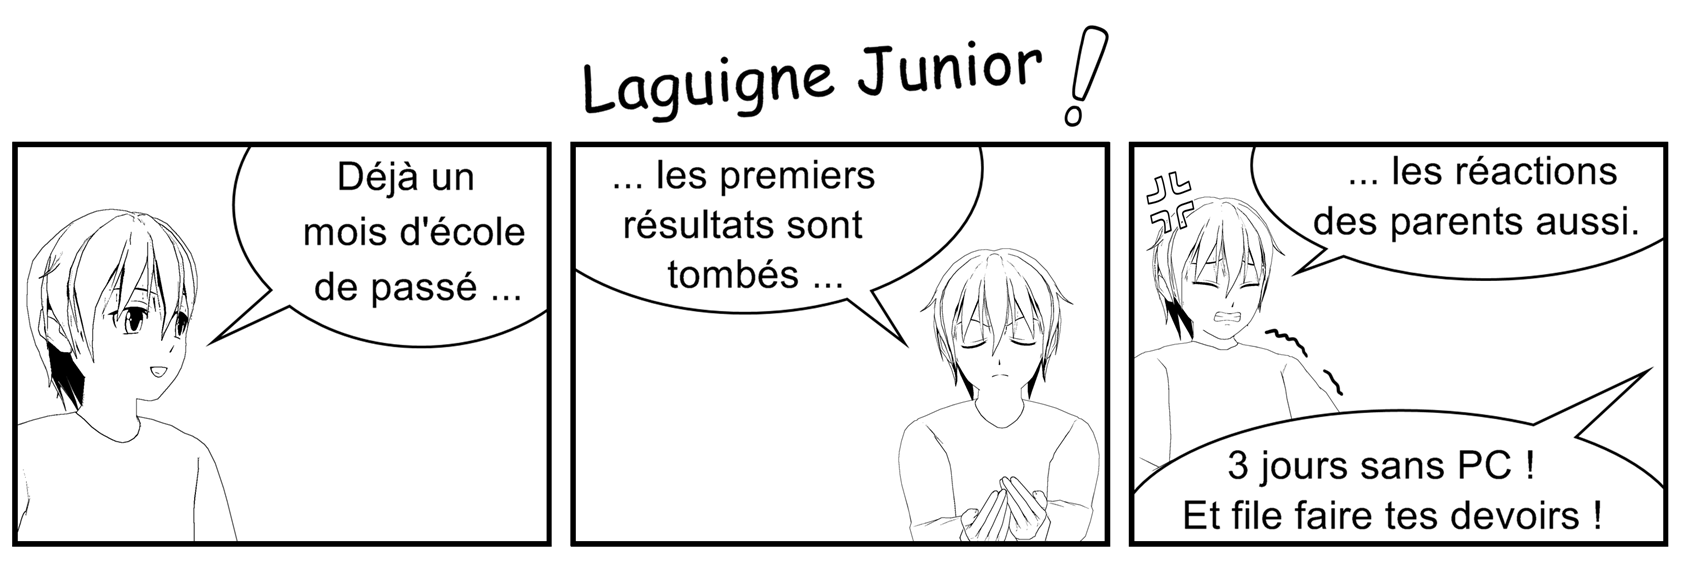 Laguigne Junior - Strip Laguig16